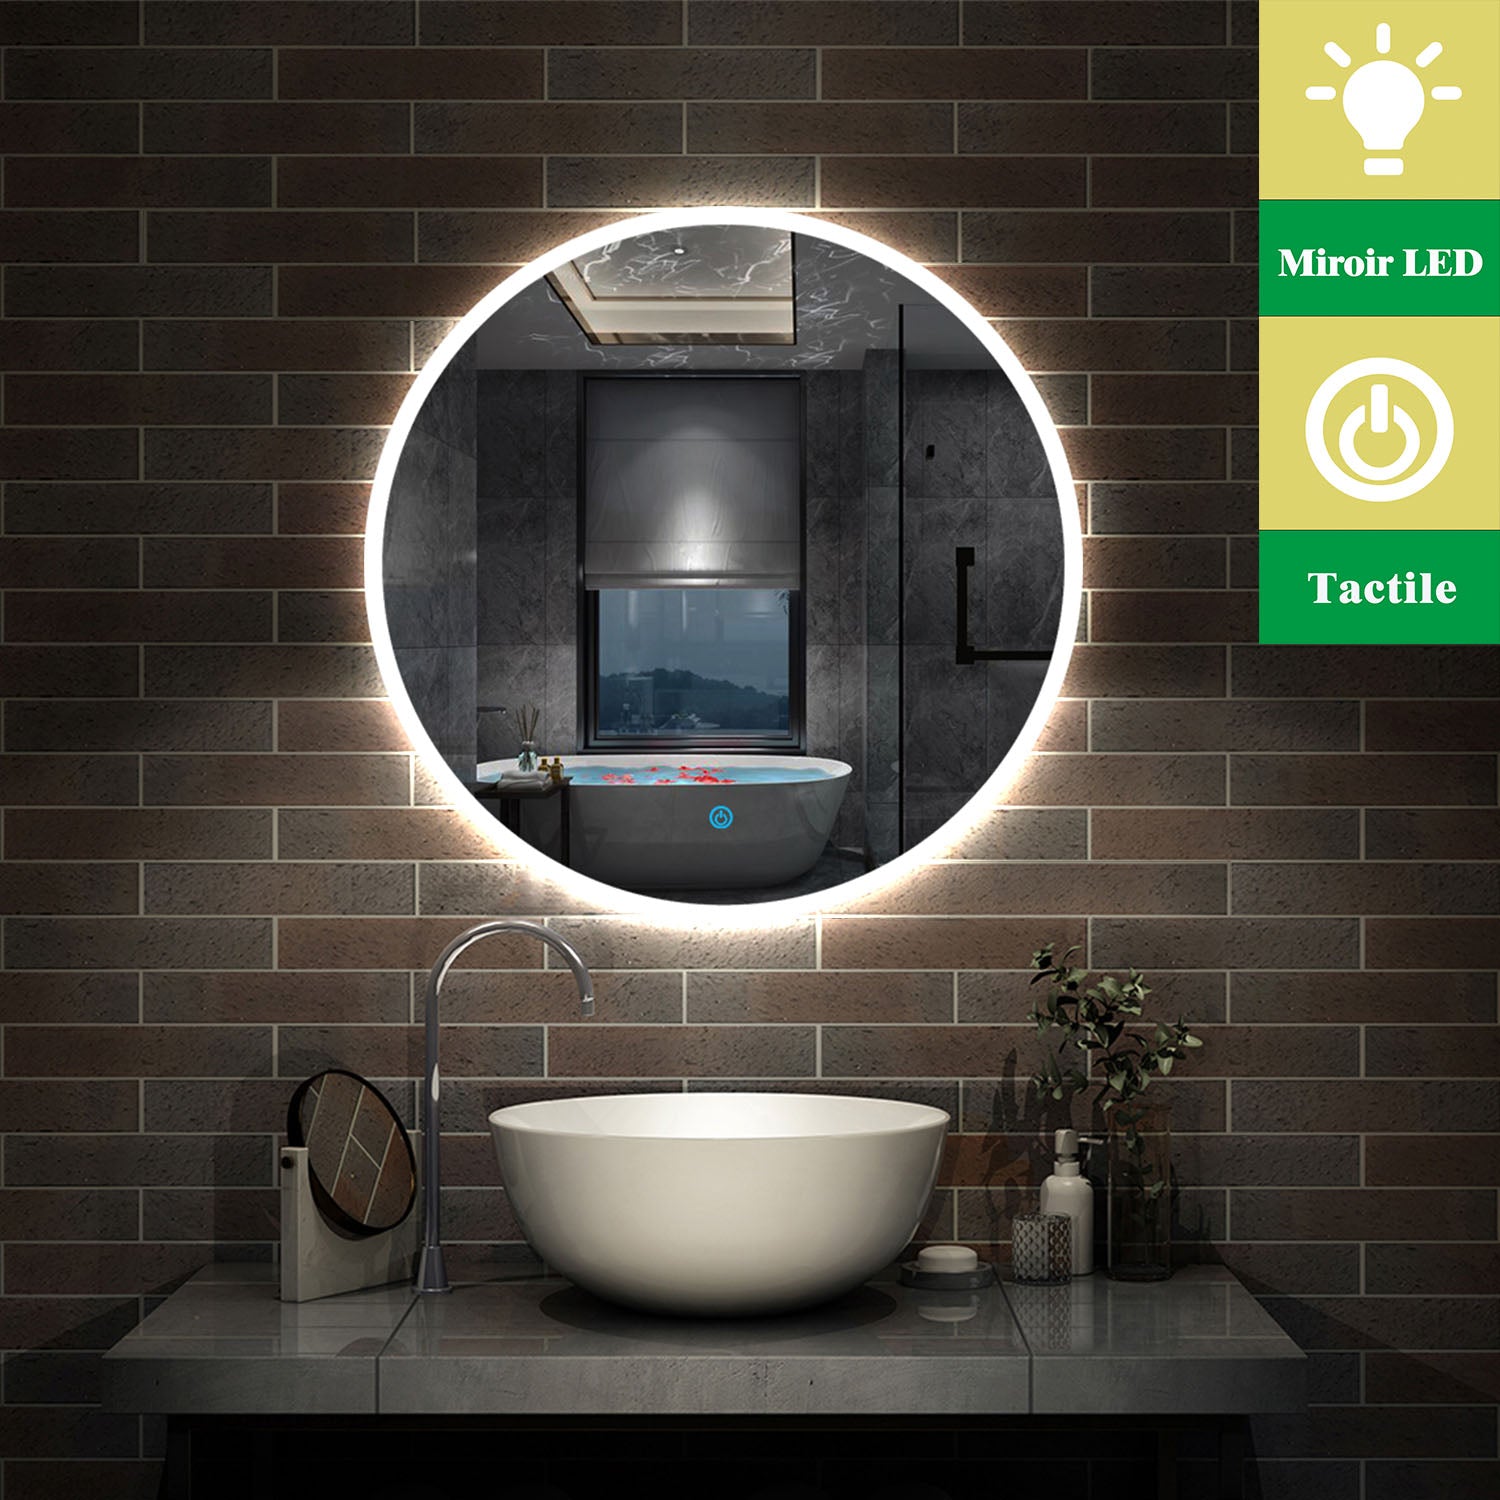 AICA Miroir de salle bain Rond LED, Lumière Blanc du jour 6000K Ø 60cm Type A -Livraison gratuite